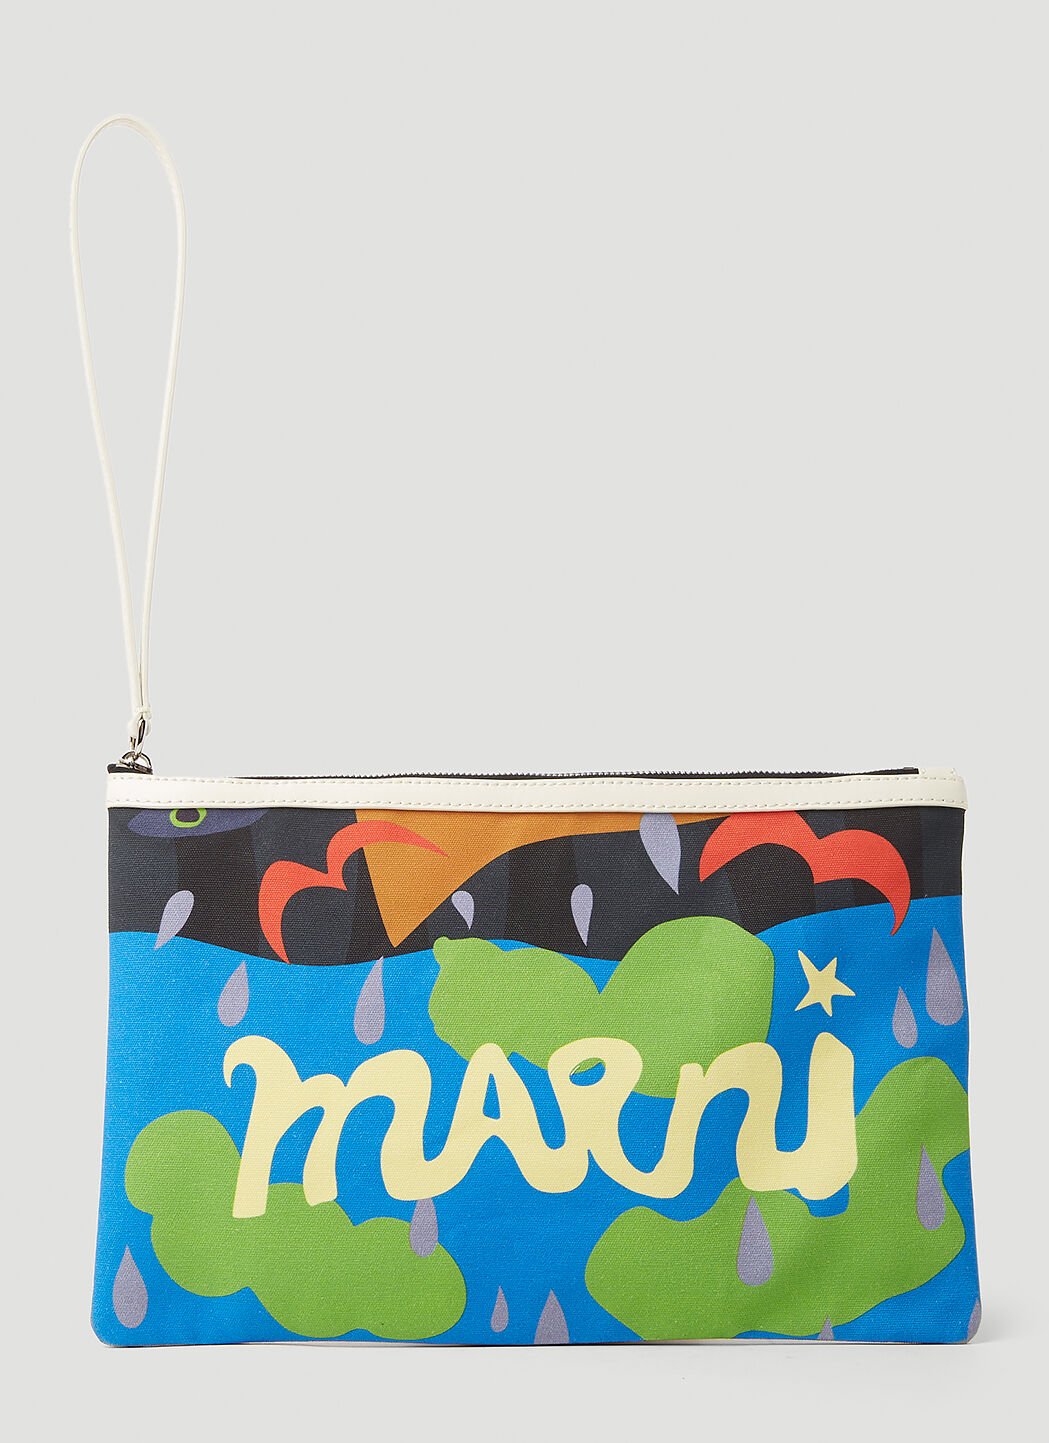 Marni x No Vacancy 그래픽 프린트 파우치 멀티컬러 mvy0153015